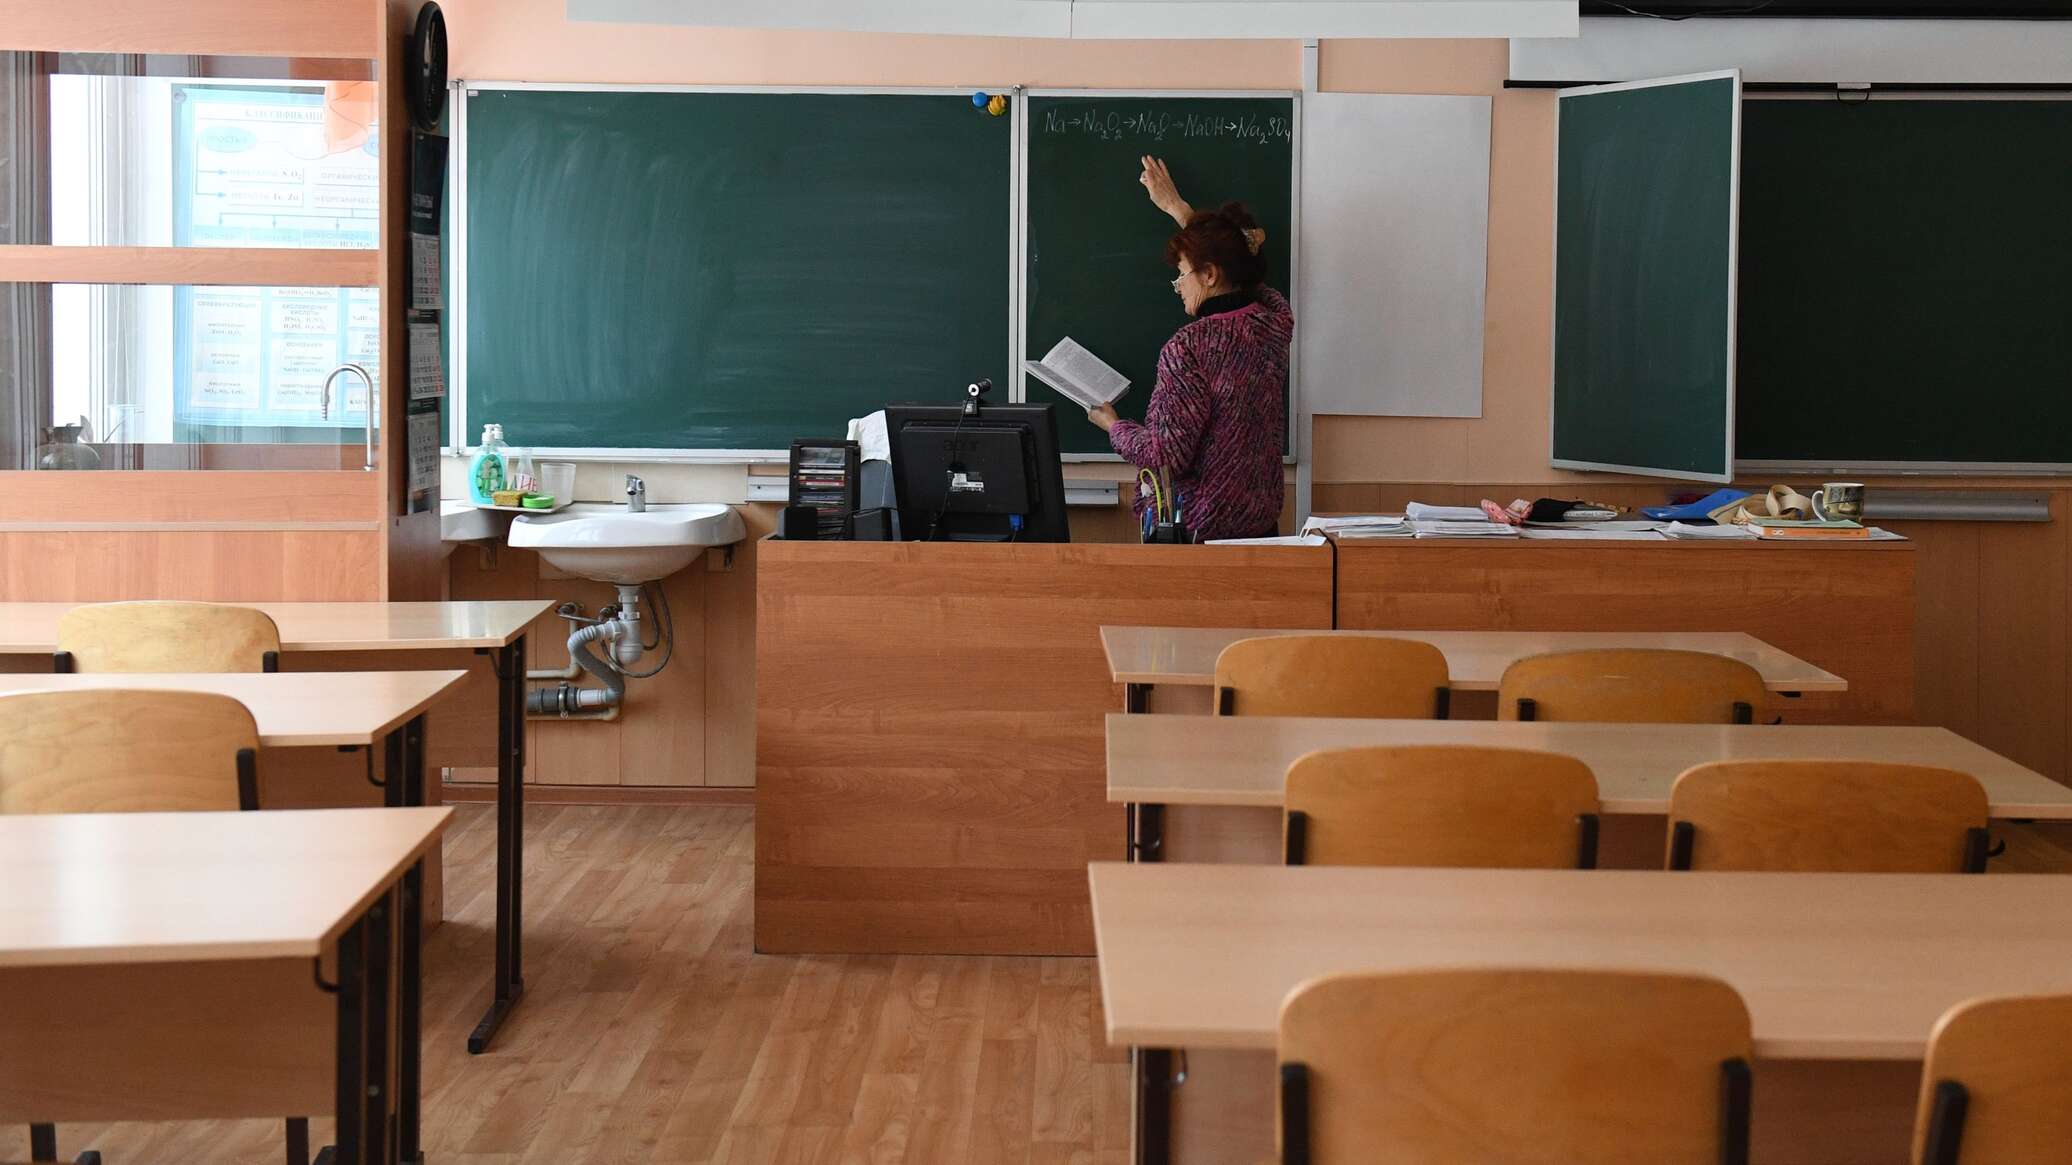 Головой о школьную доску била учитель ученика в Акмолинской области